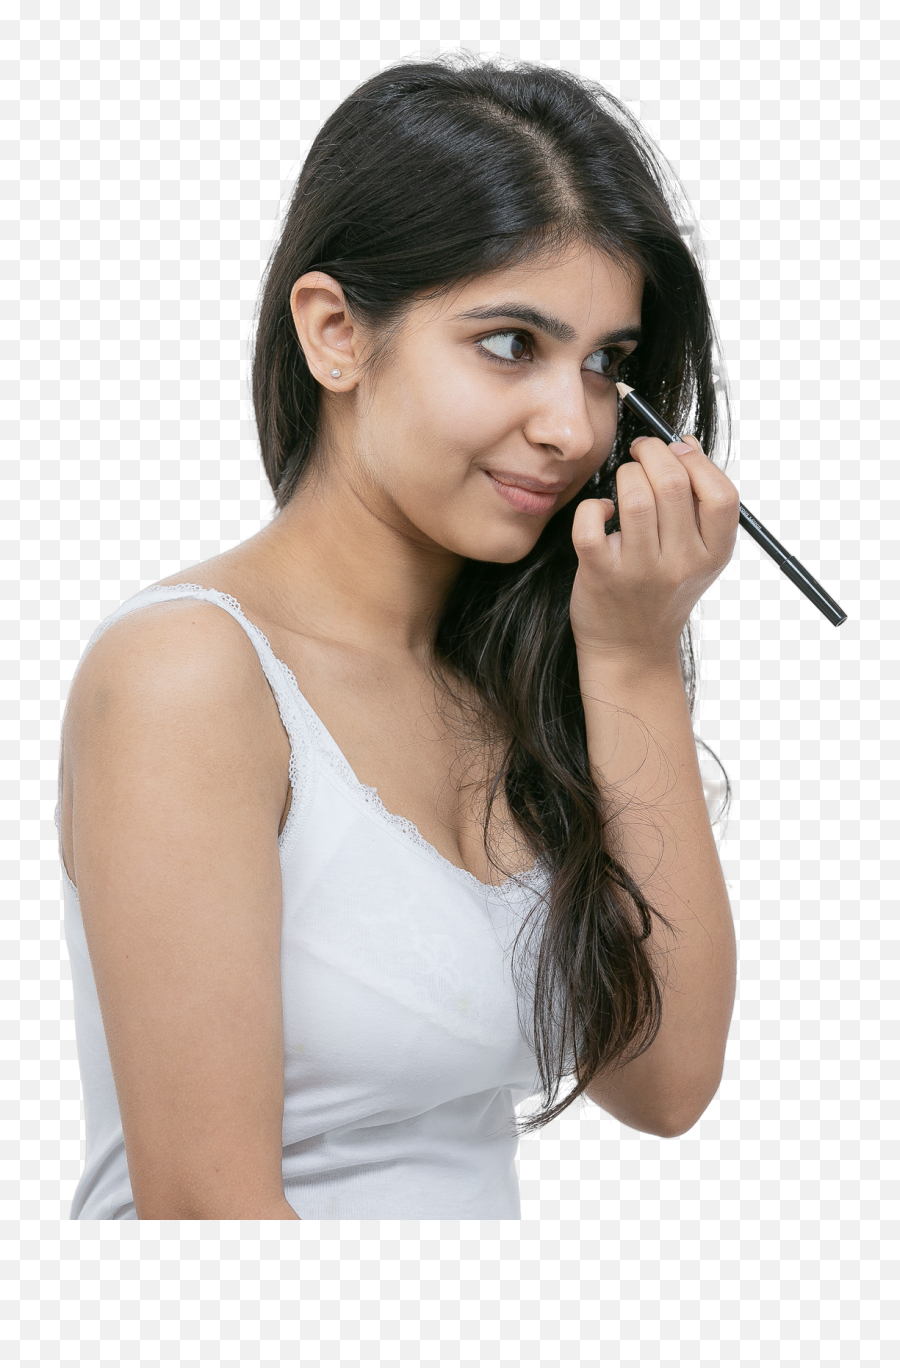 All Day Smudge Free Kohl Eyeliner - Kohl Pencil Sharpener For Women Png,Color Icon Kohl Eyeliner Pencil